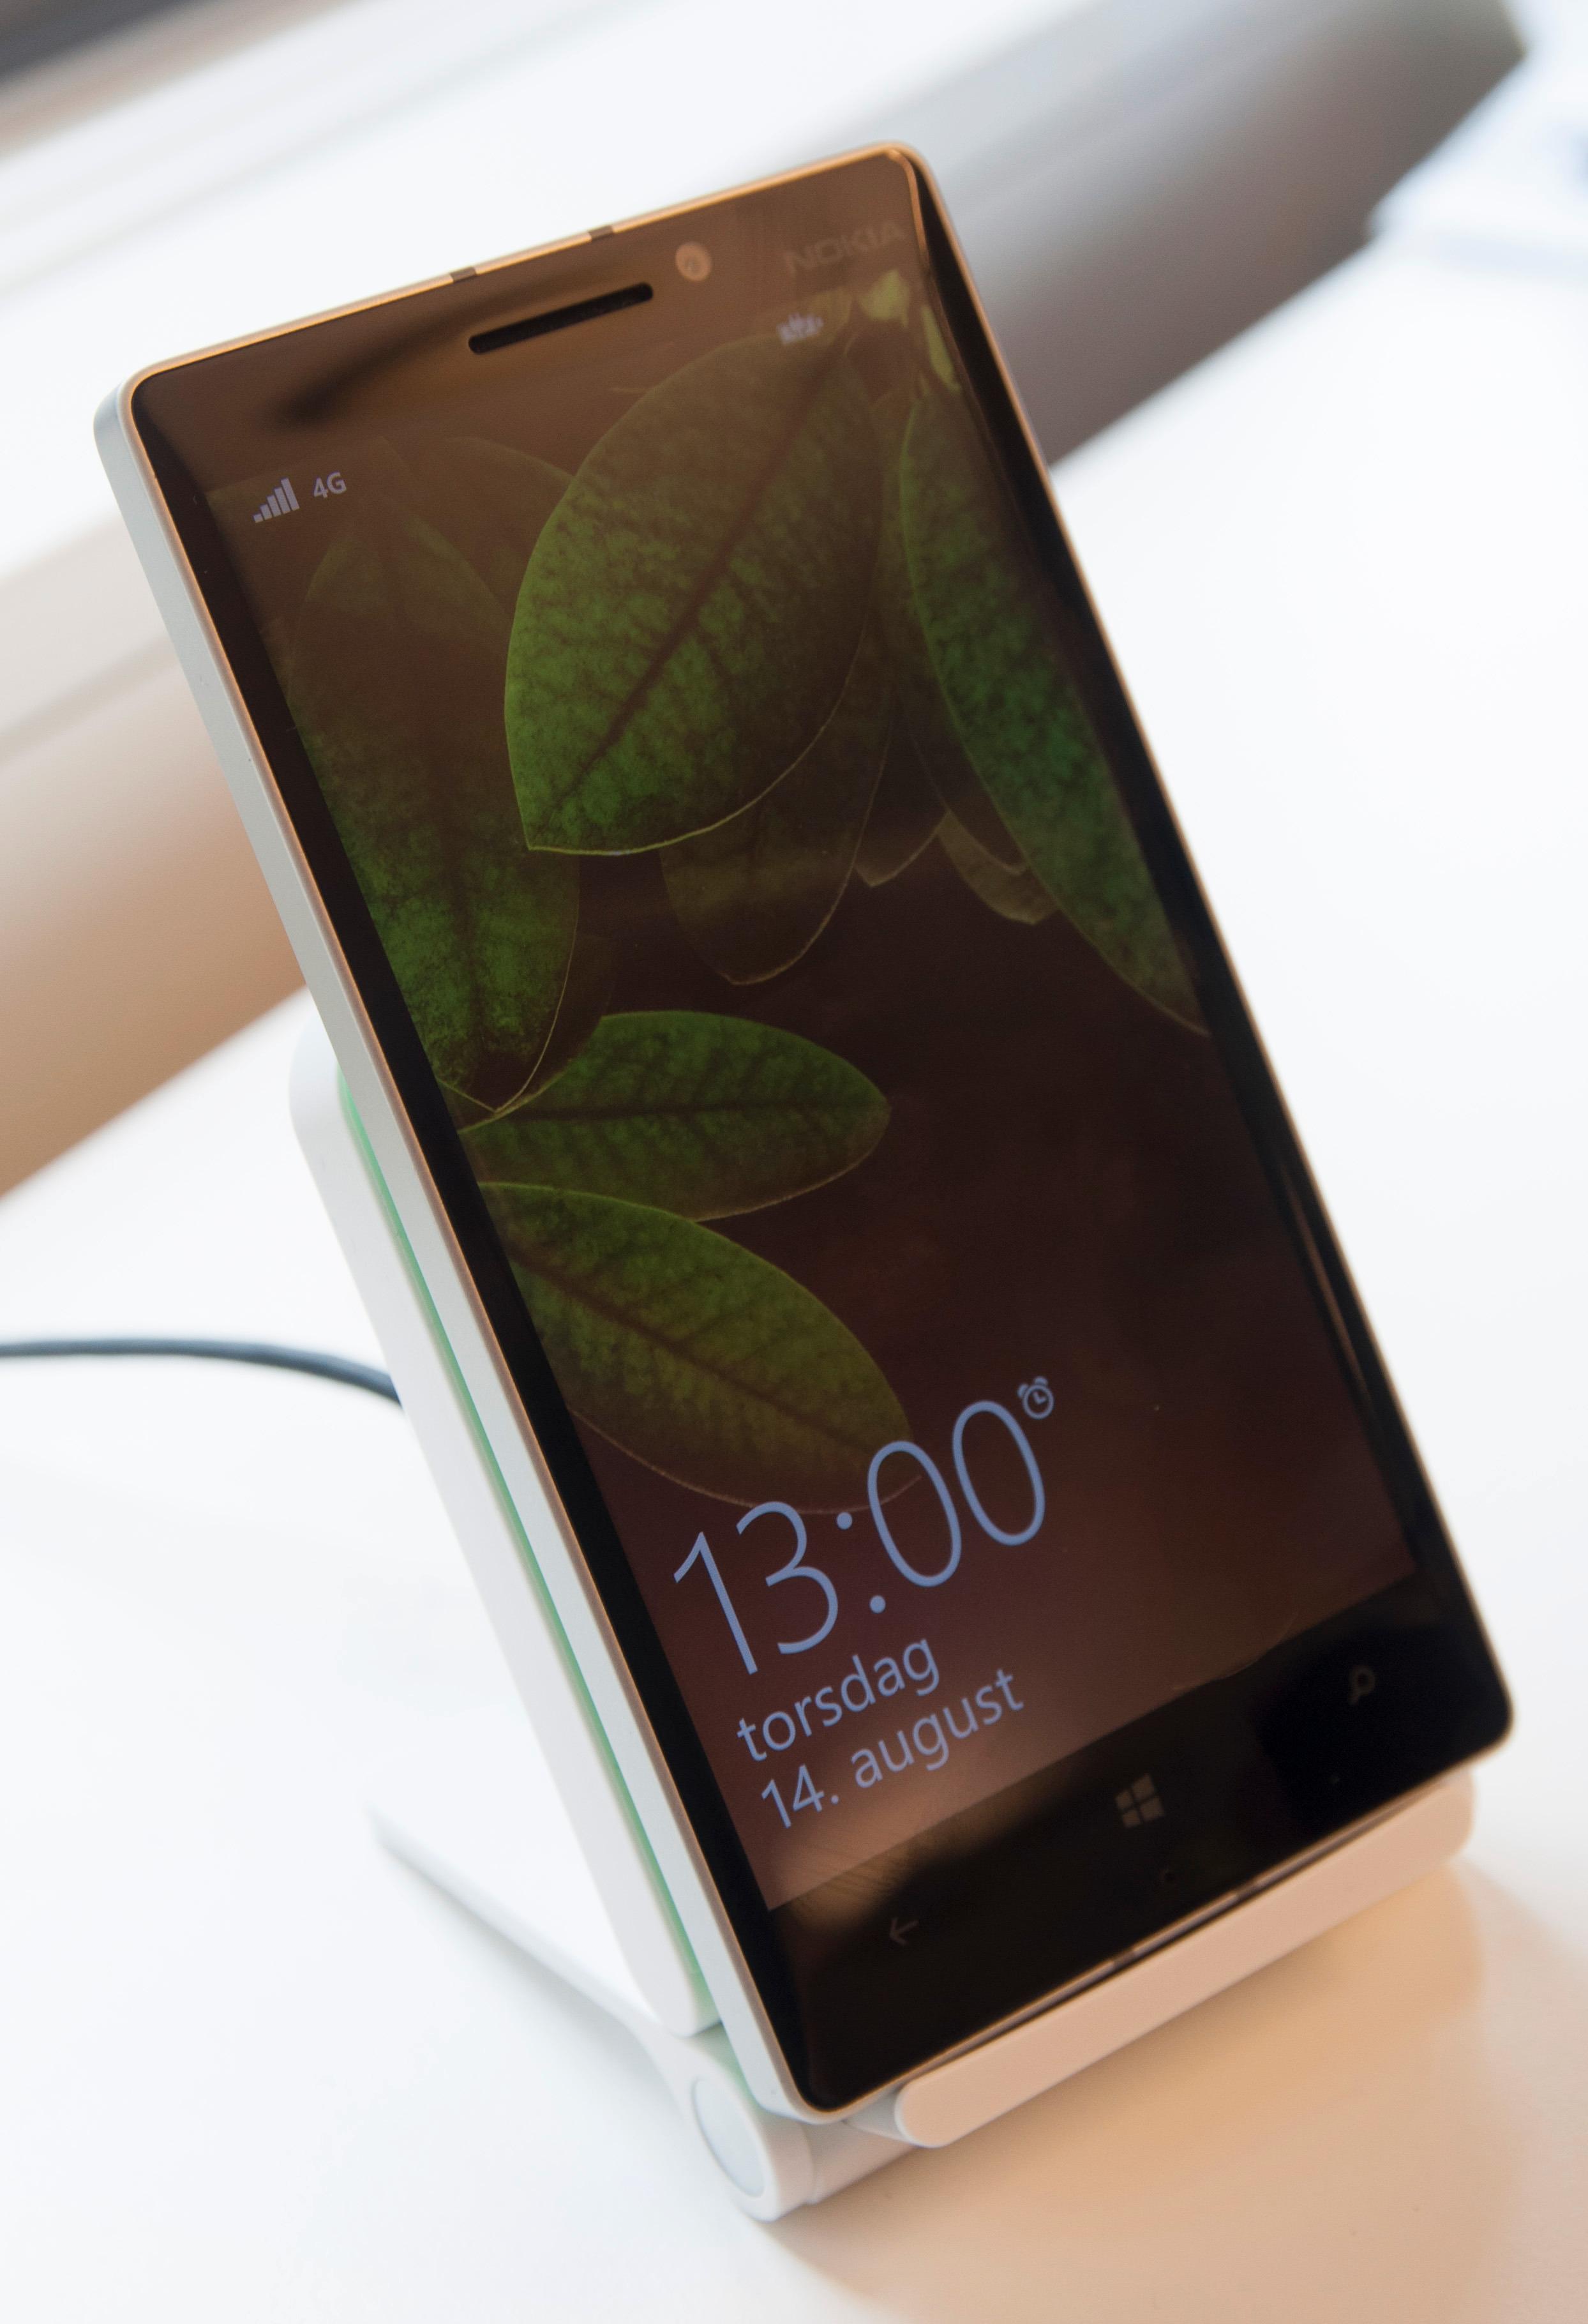 Nokia Lumia 930 støtter stort sett de trådløse ladeløsningene du finner i butikk i dag. Her flotter den seg i LGs nye trådløse lader.Foto: Finn Jarle Kvalheim, Amobil.no